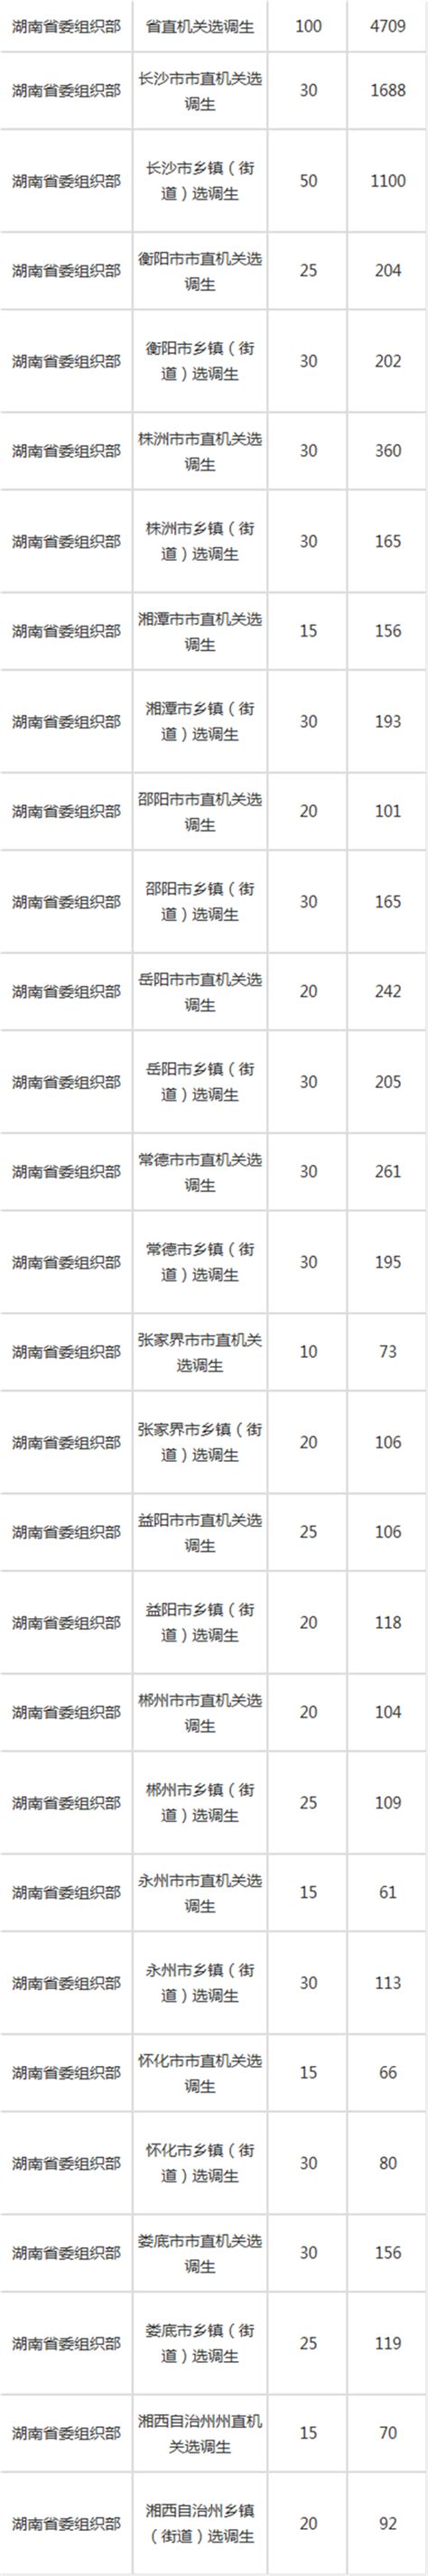 2022年湖南选调生报名人数统计 省直和长沙岗位竞争最激烈_18183教育